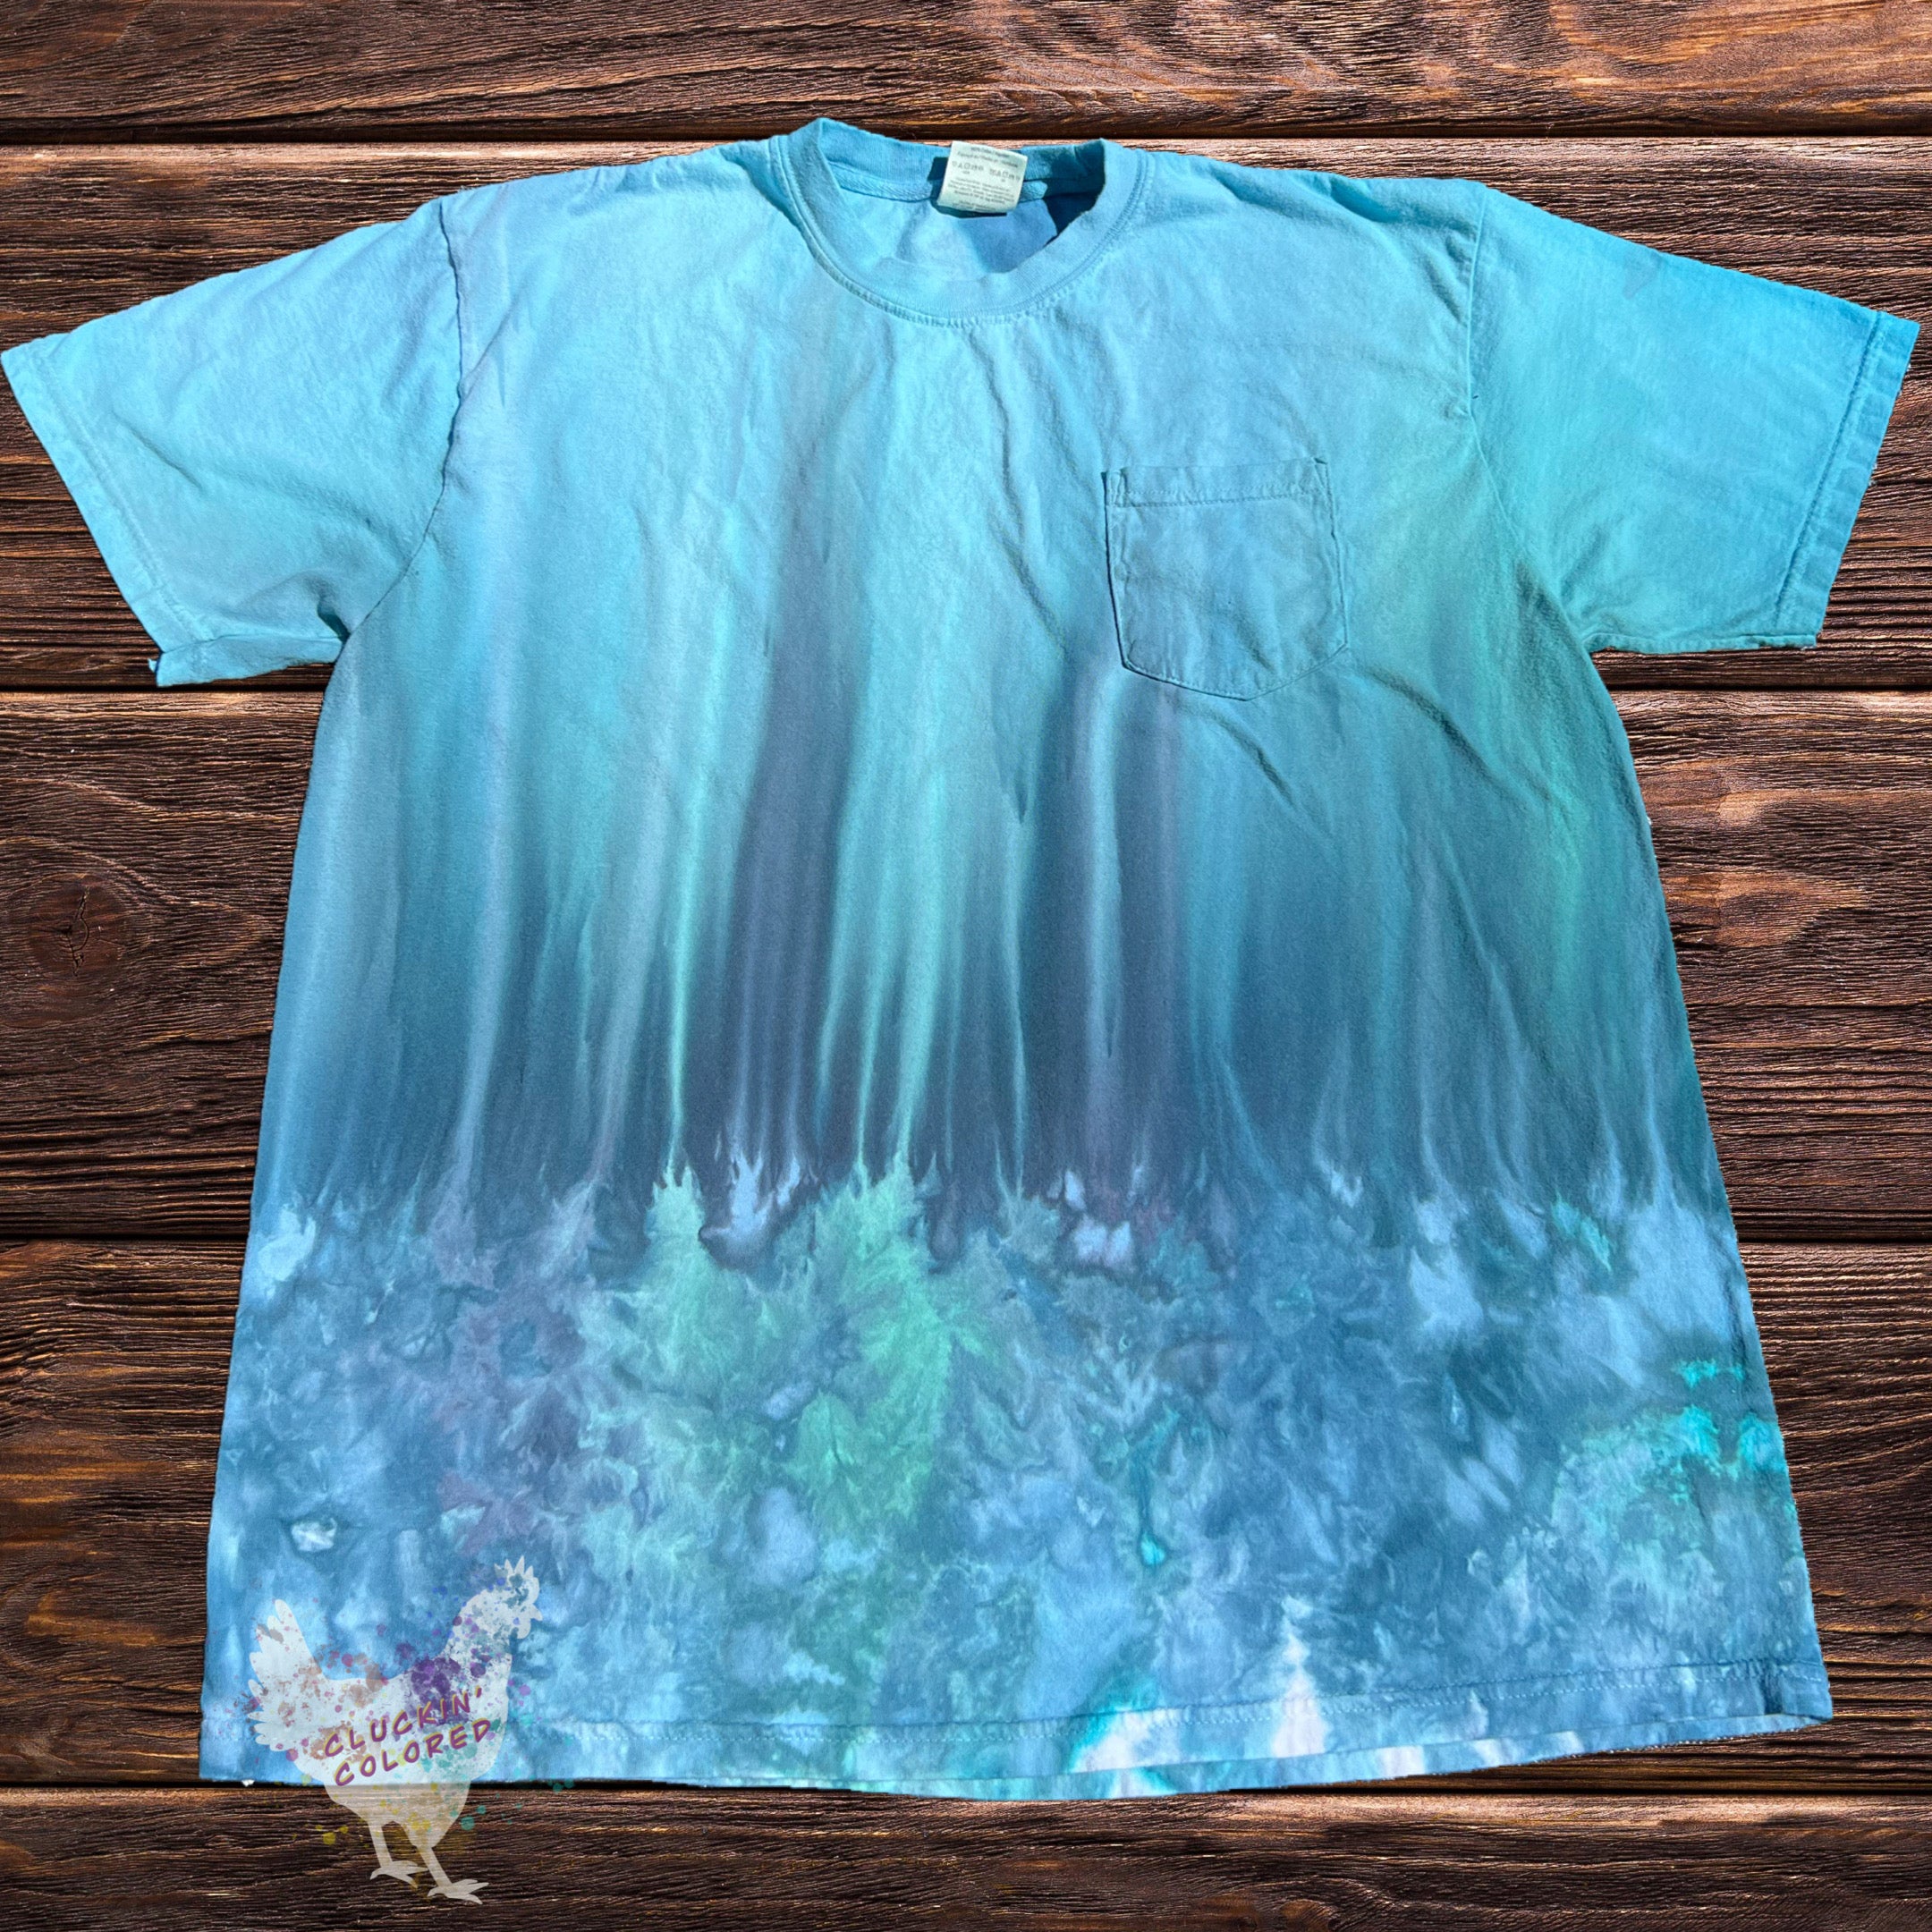 Unisex XL T-Shirt - Waterfall Gravity Scrunch